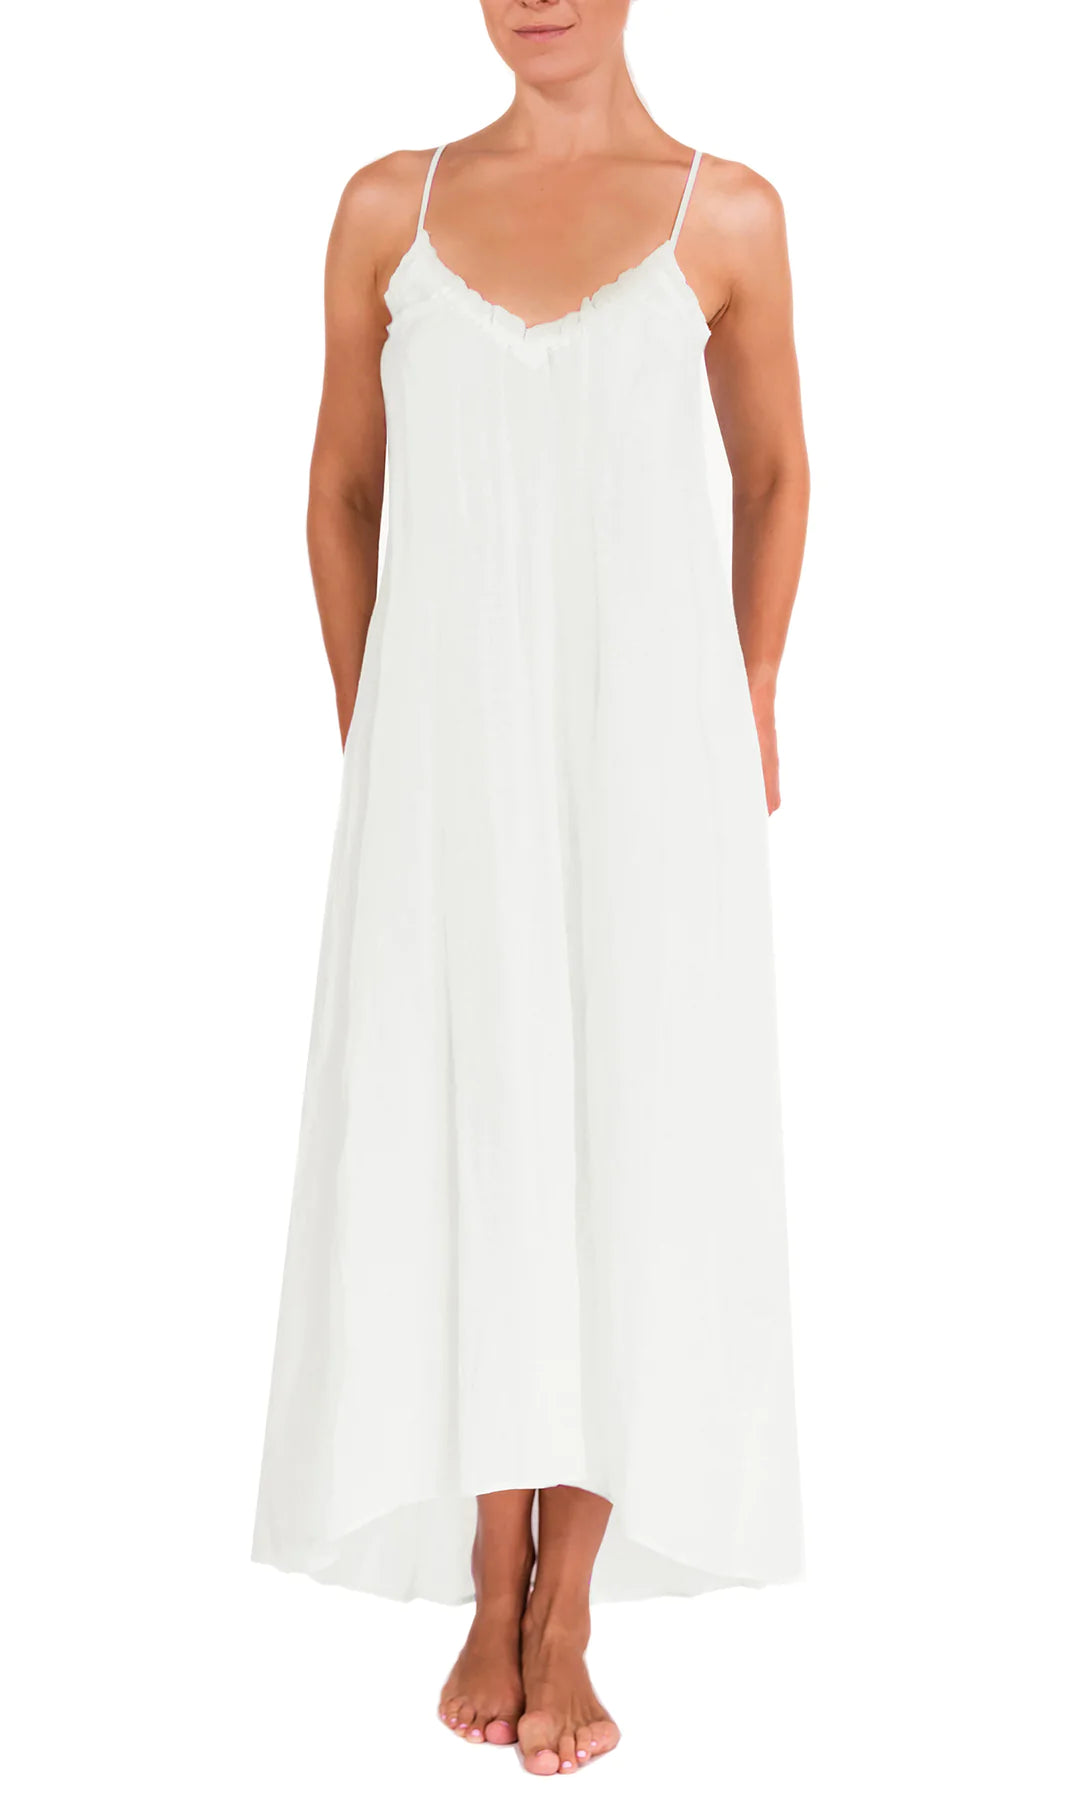 Cottonhill White Women Underwear & Nightwear Styles, Prices - Trendyol